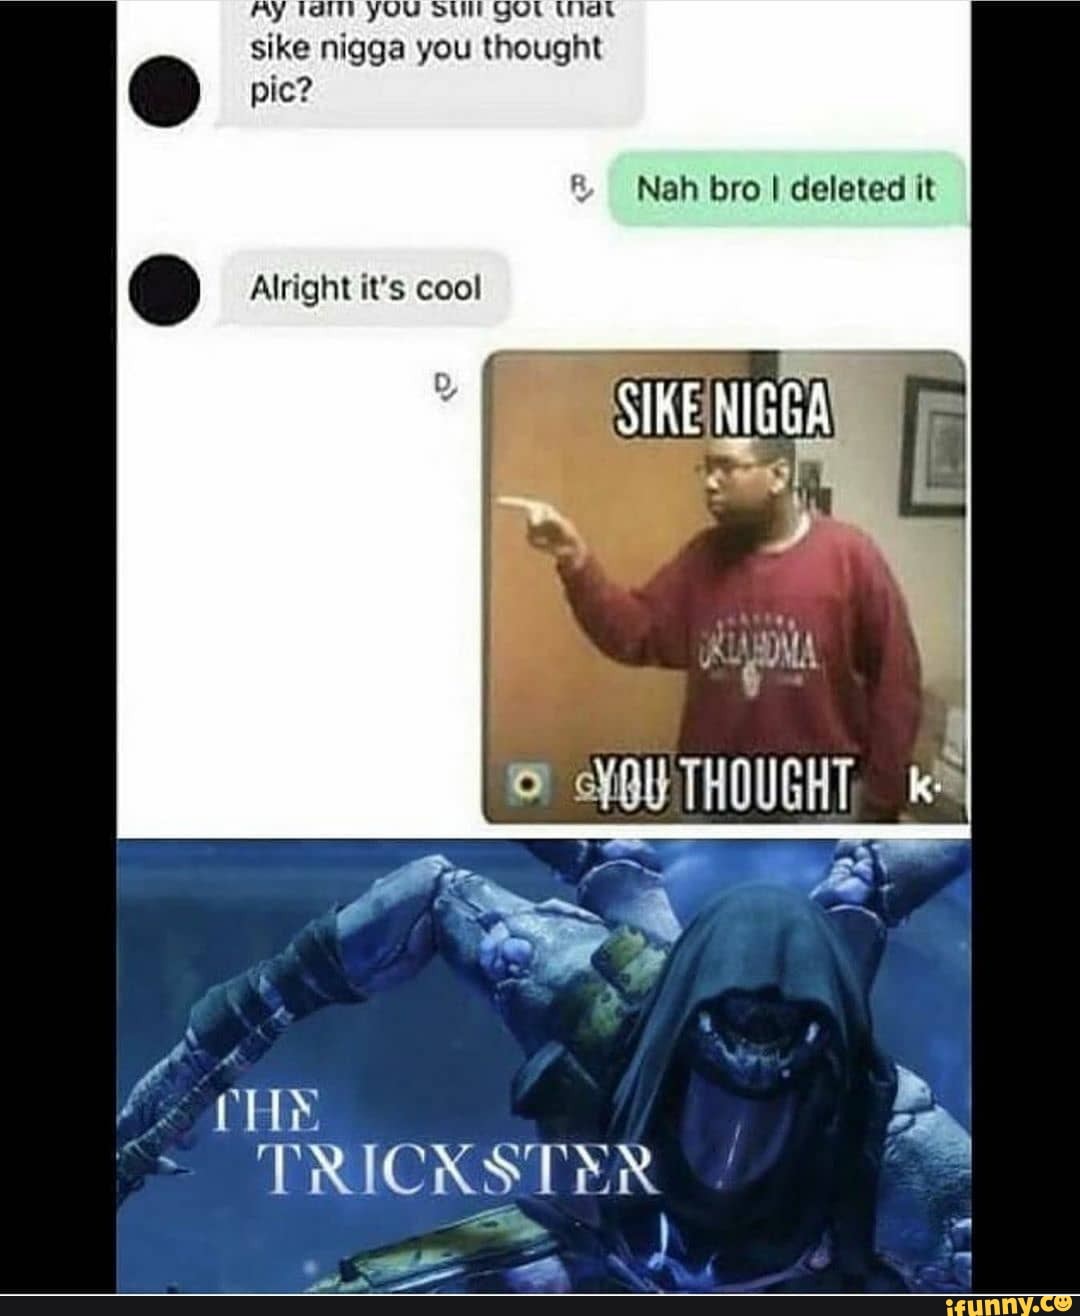 Sike nigga you thought